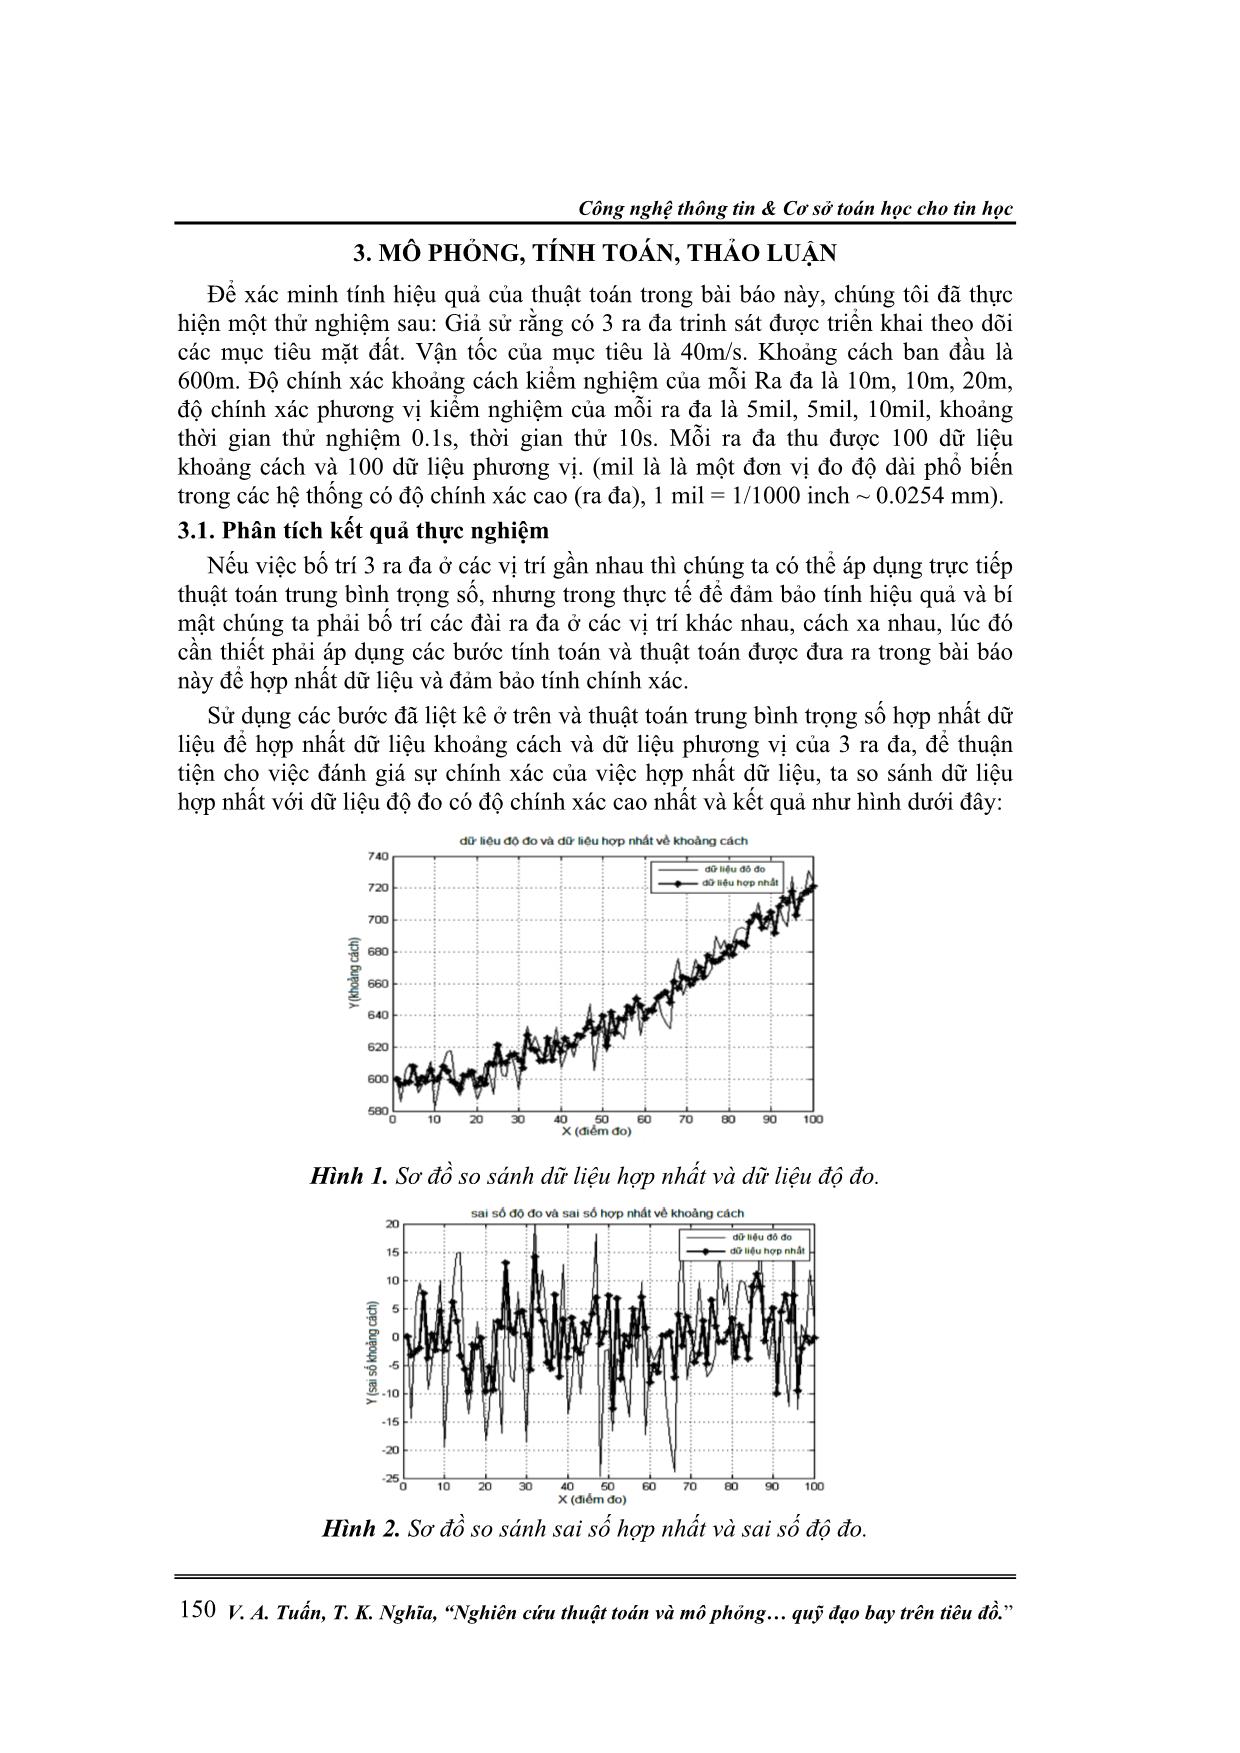 Nghiên cứu thuật toán và mô phỏng hợp nhất quỹ đạo bay trên tiêu đồ trang 5